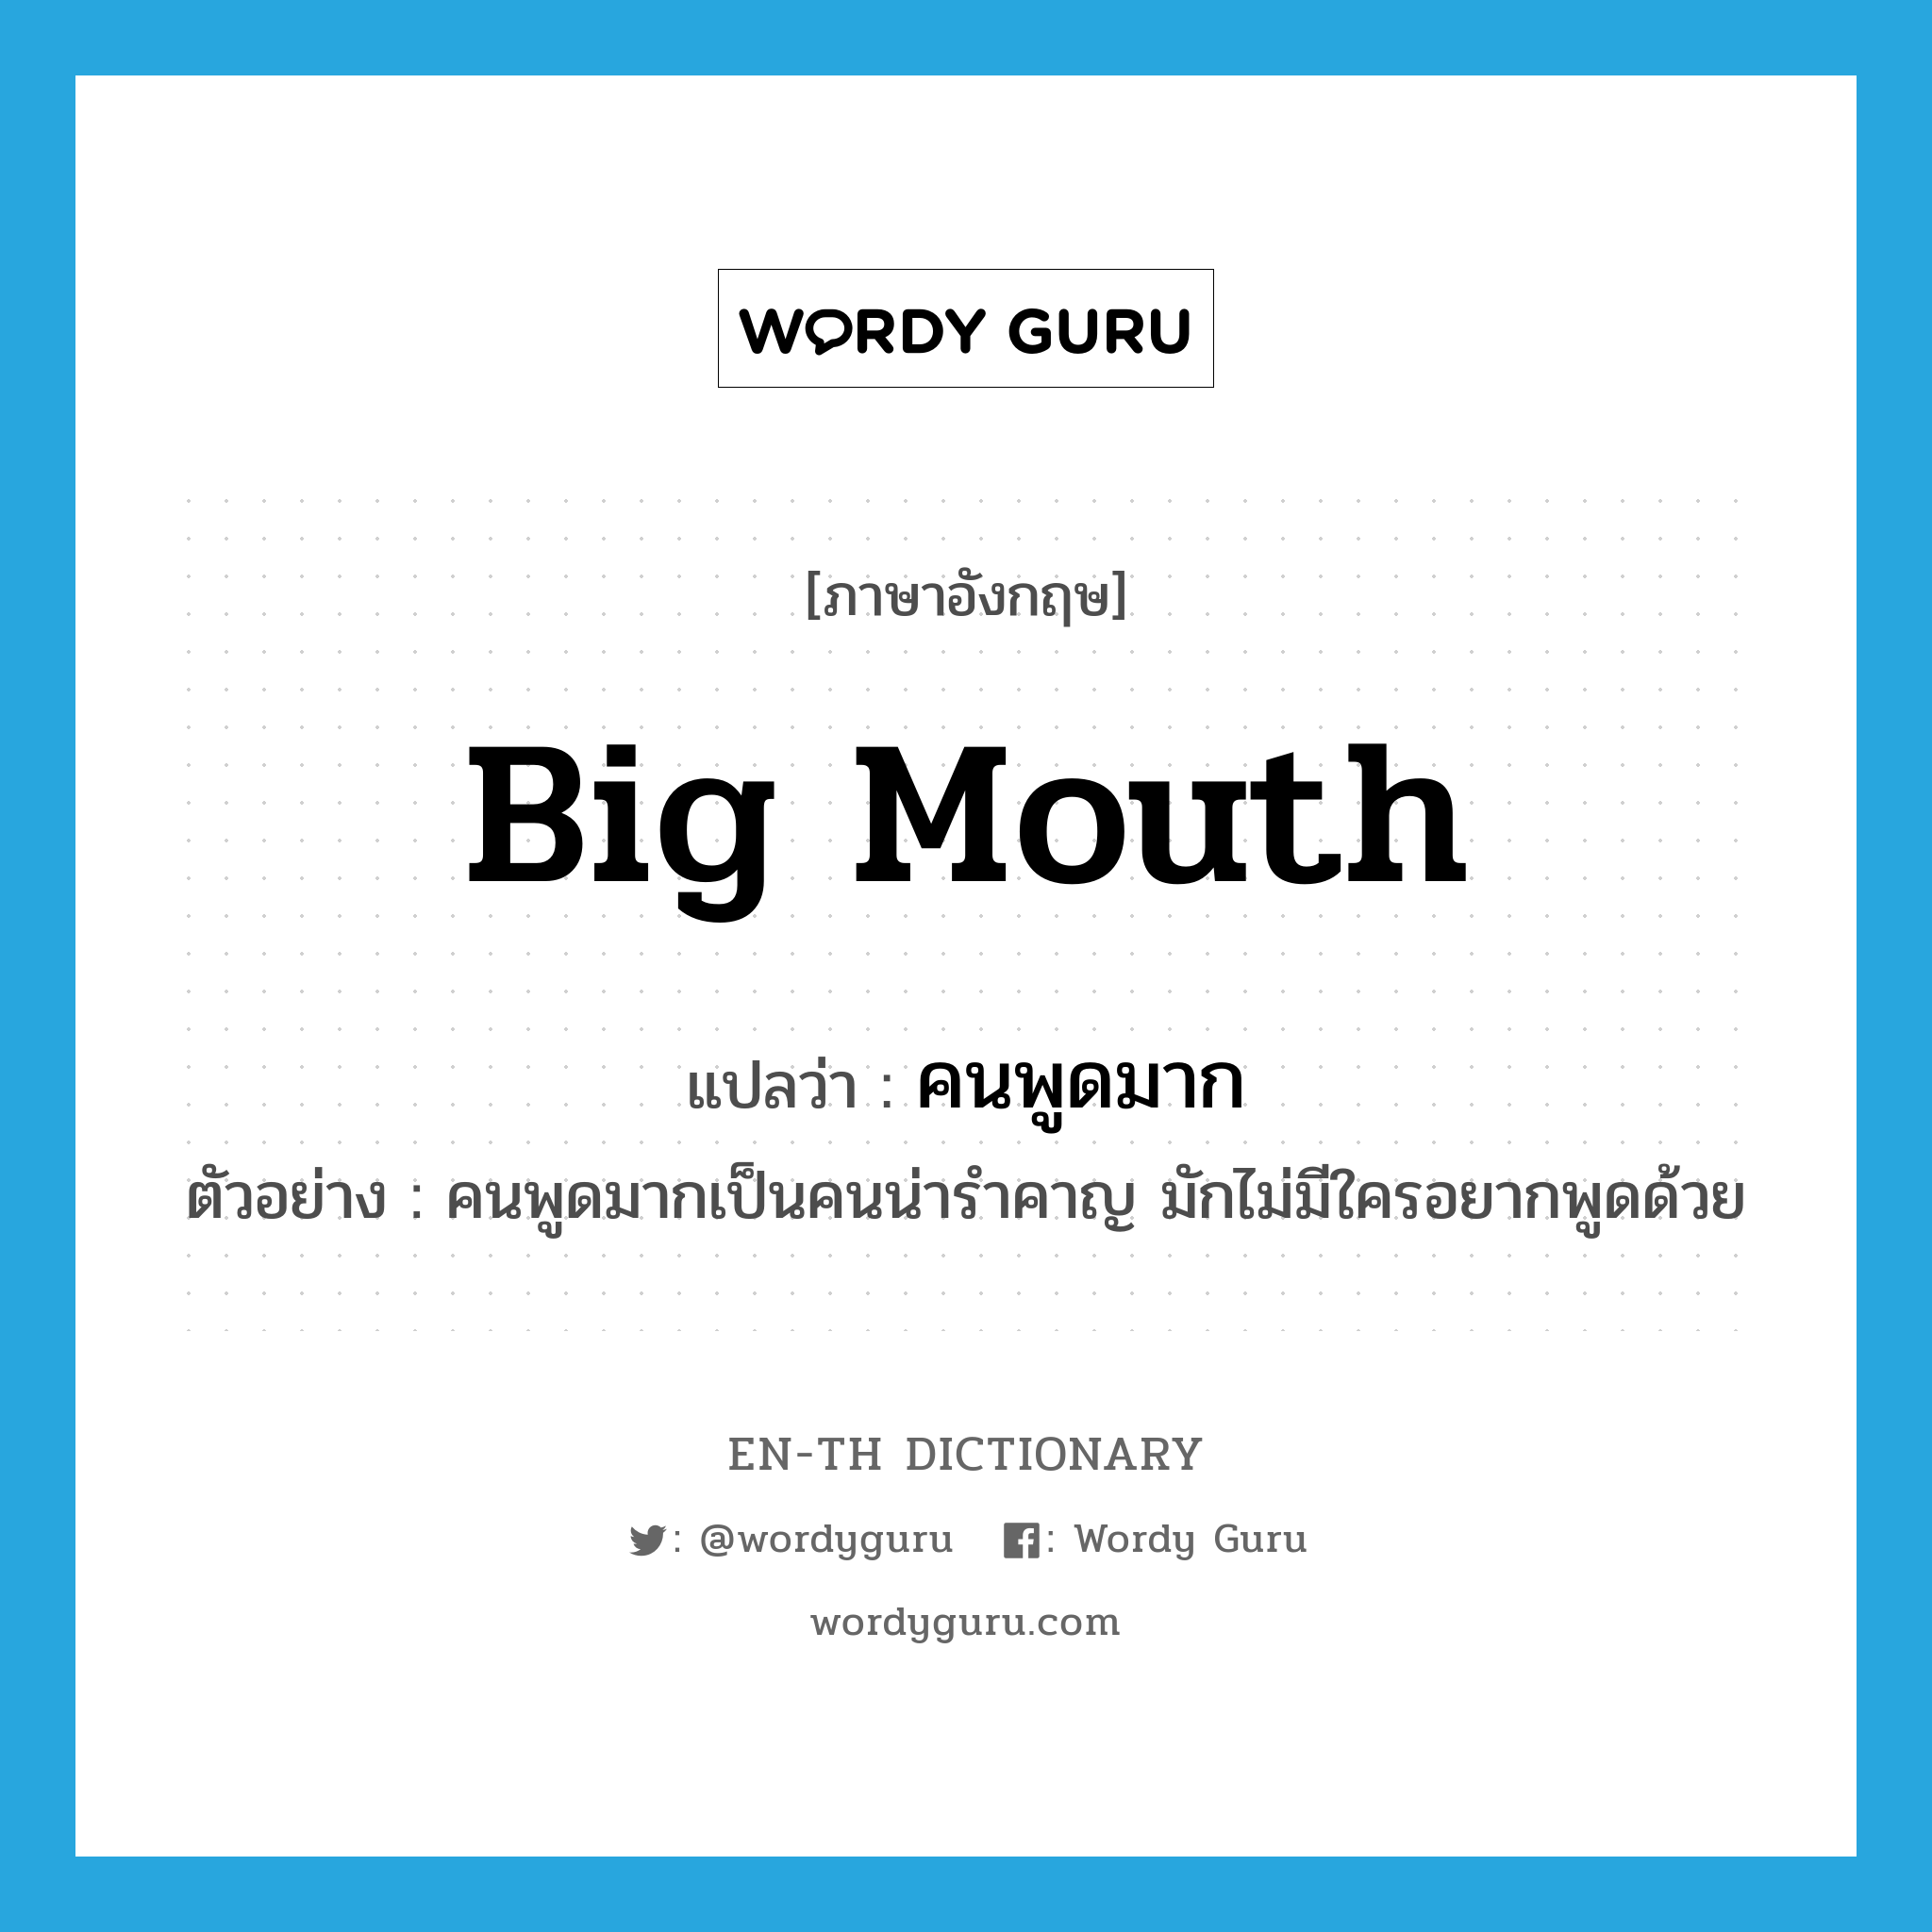 big mouth แปลว่า?, คำศัพท์ภาษาอังกฤษ big mouth แปลว่า คนพูดมาก ประเภท N ตัวอย่าง คนพูดมากเป็นคนน่ารำคาญ มักไม่มีใครอยากพูดด้วย หมวด N